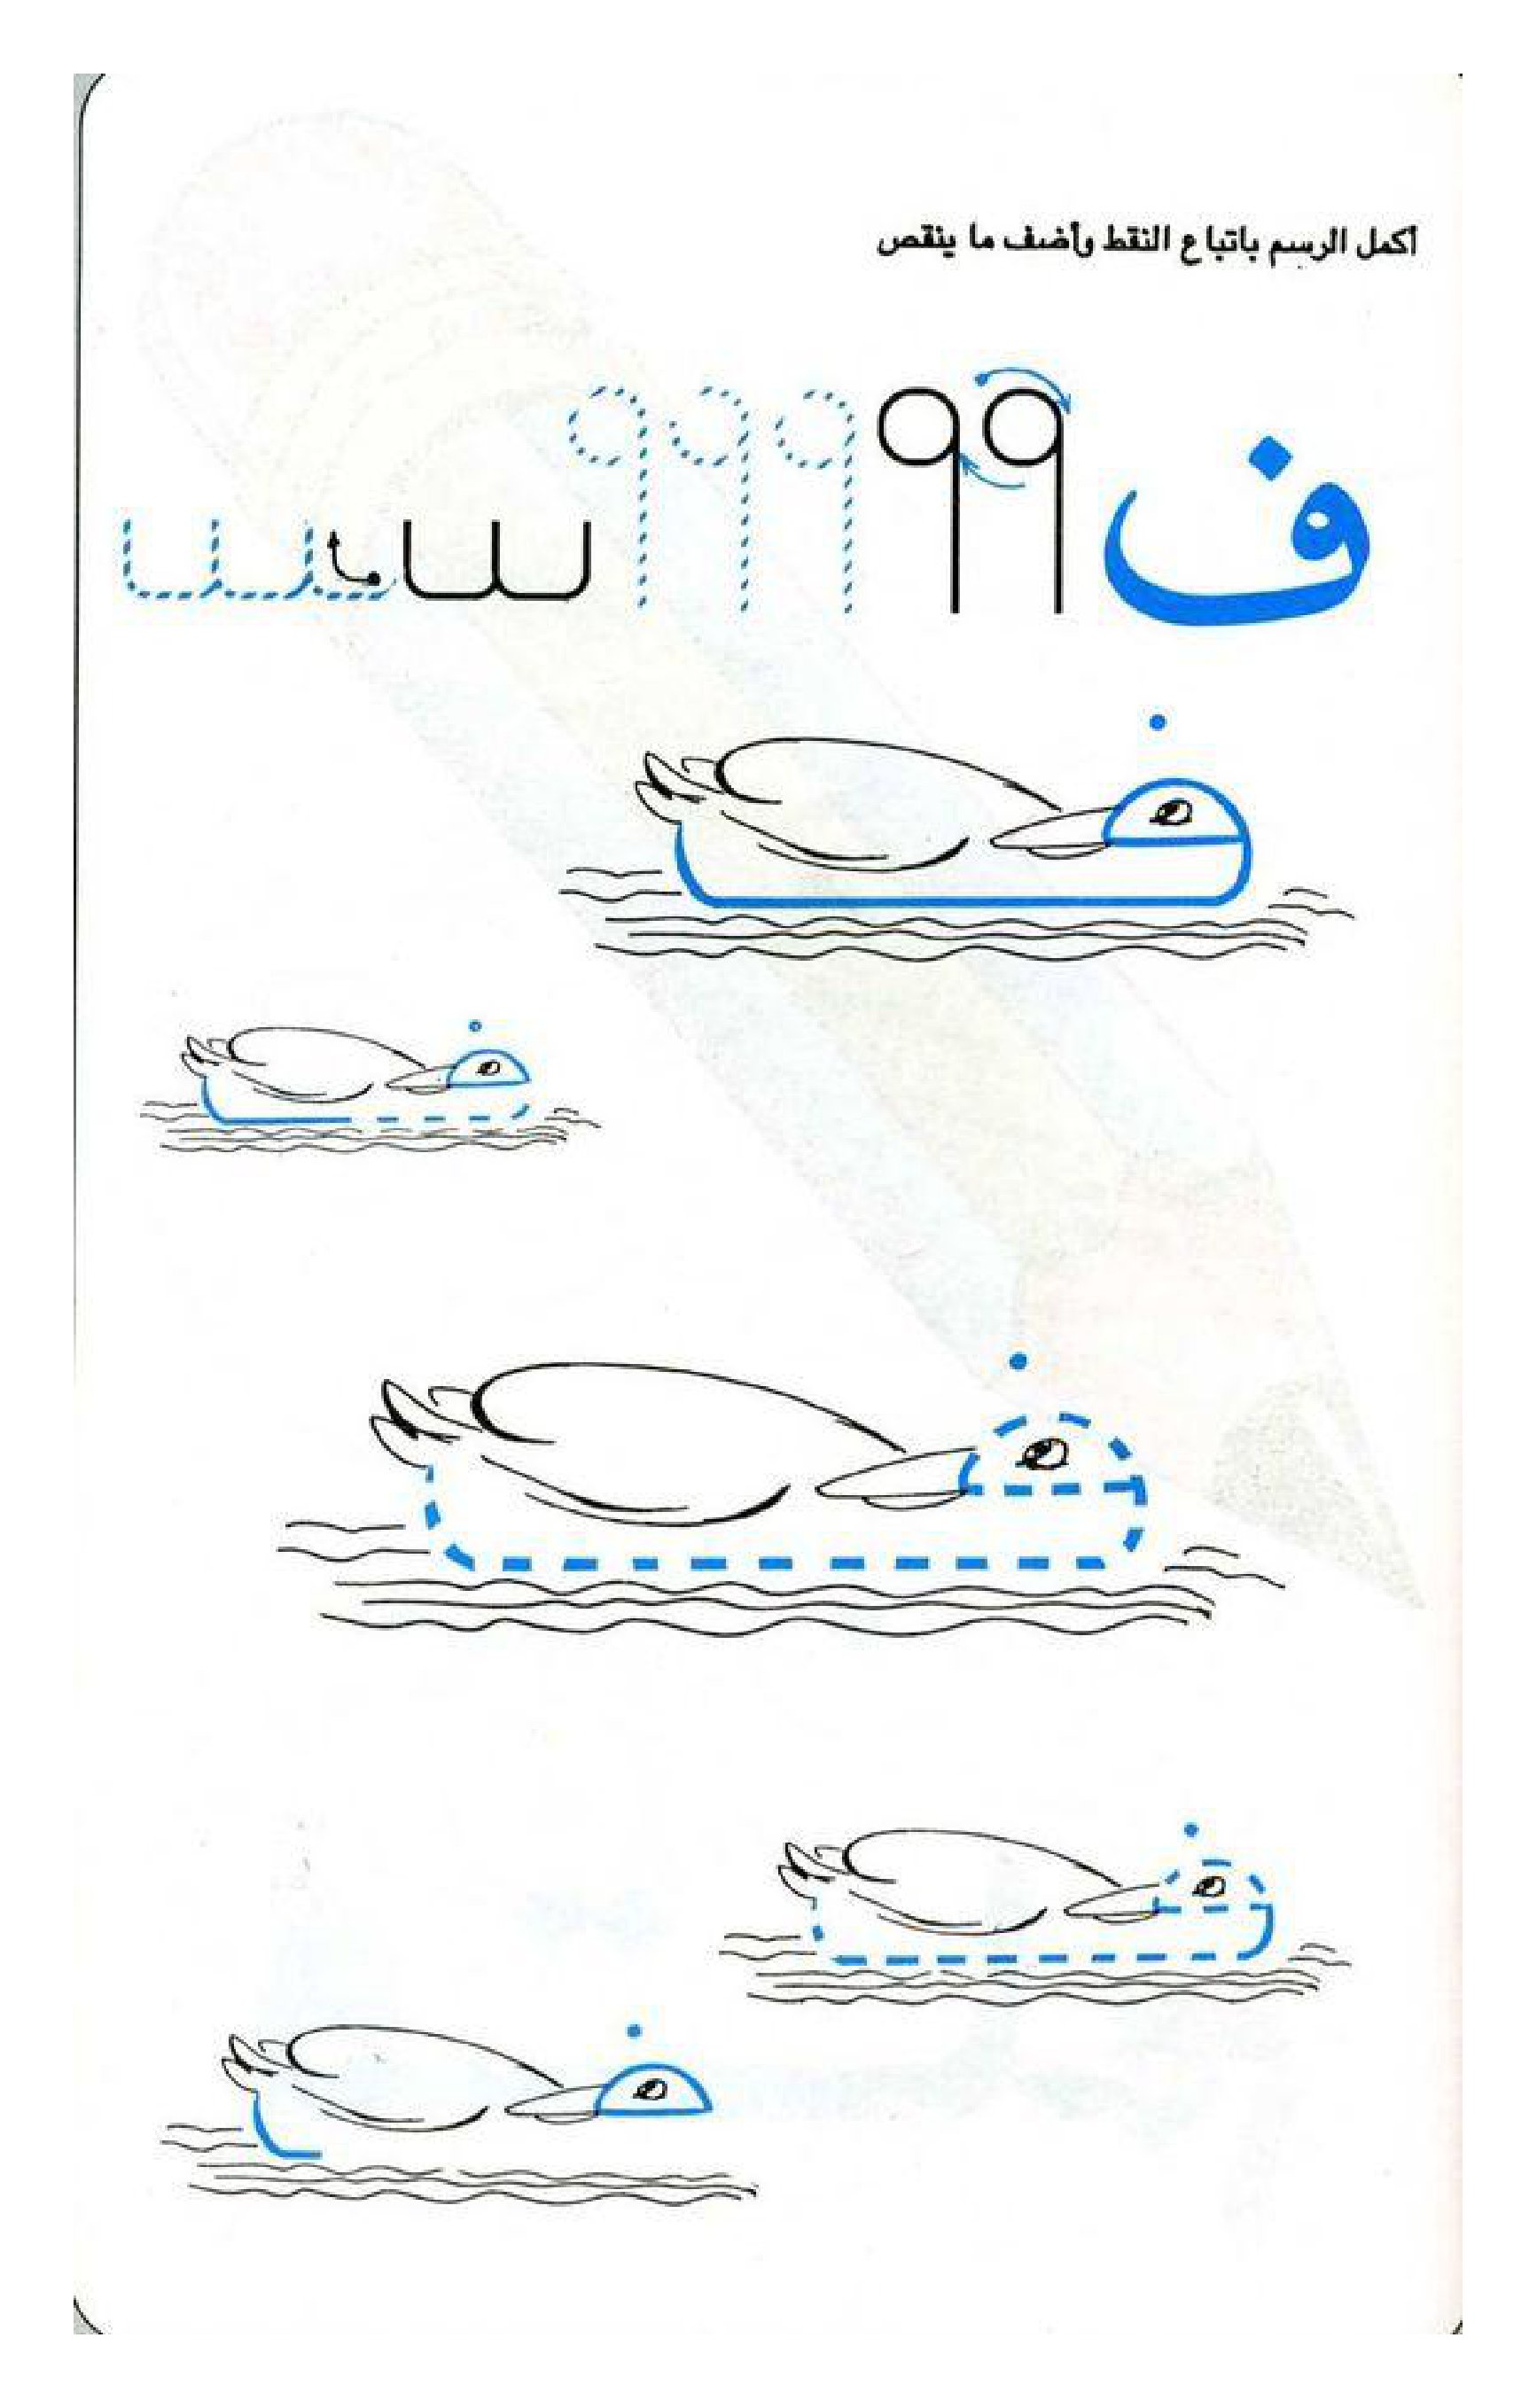 بطاقات تدريبية لرسم الحروف العربية pdf تحميل مباشر